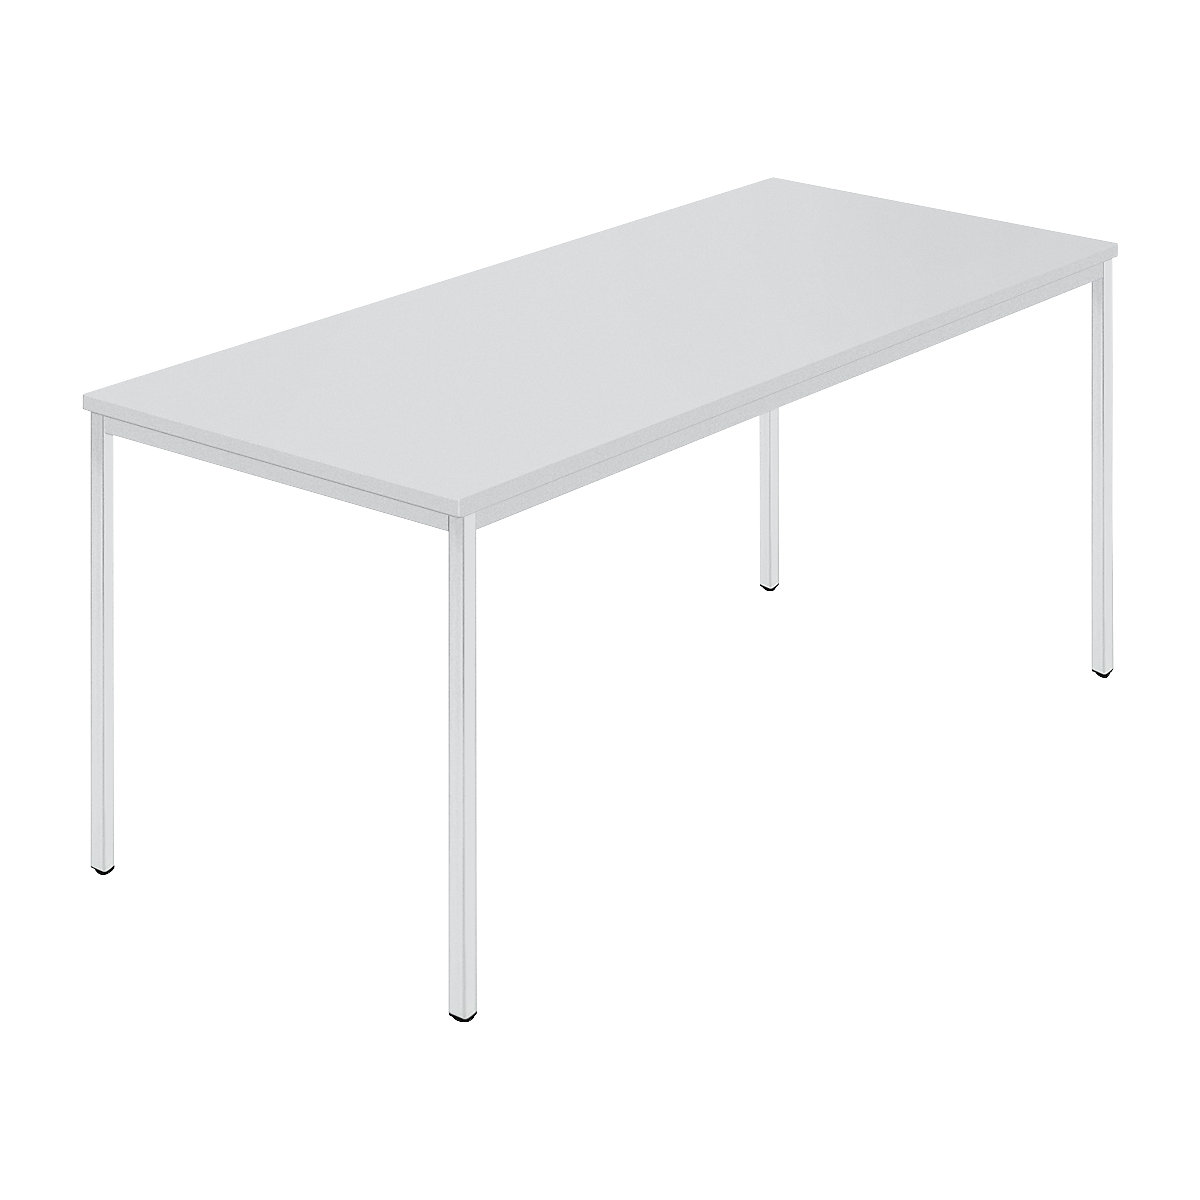 Rechthoekige tafel, vierkante buis met coating, b x d = 1600 x 800 mm, grijs / grijs-8